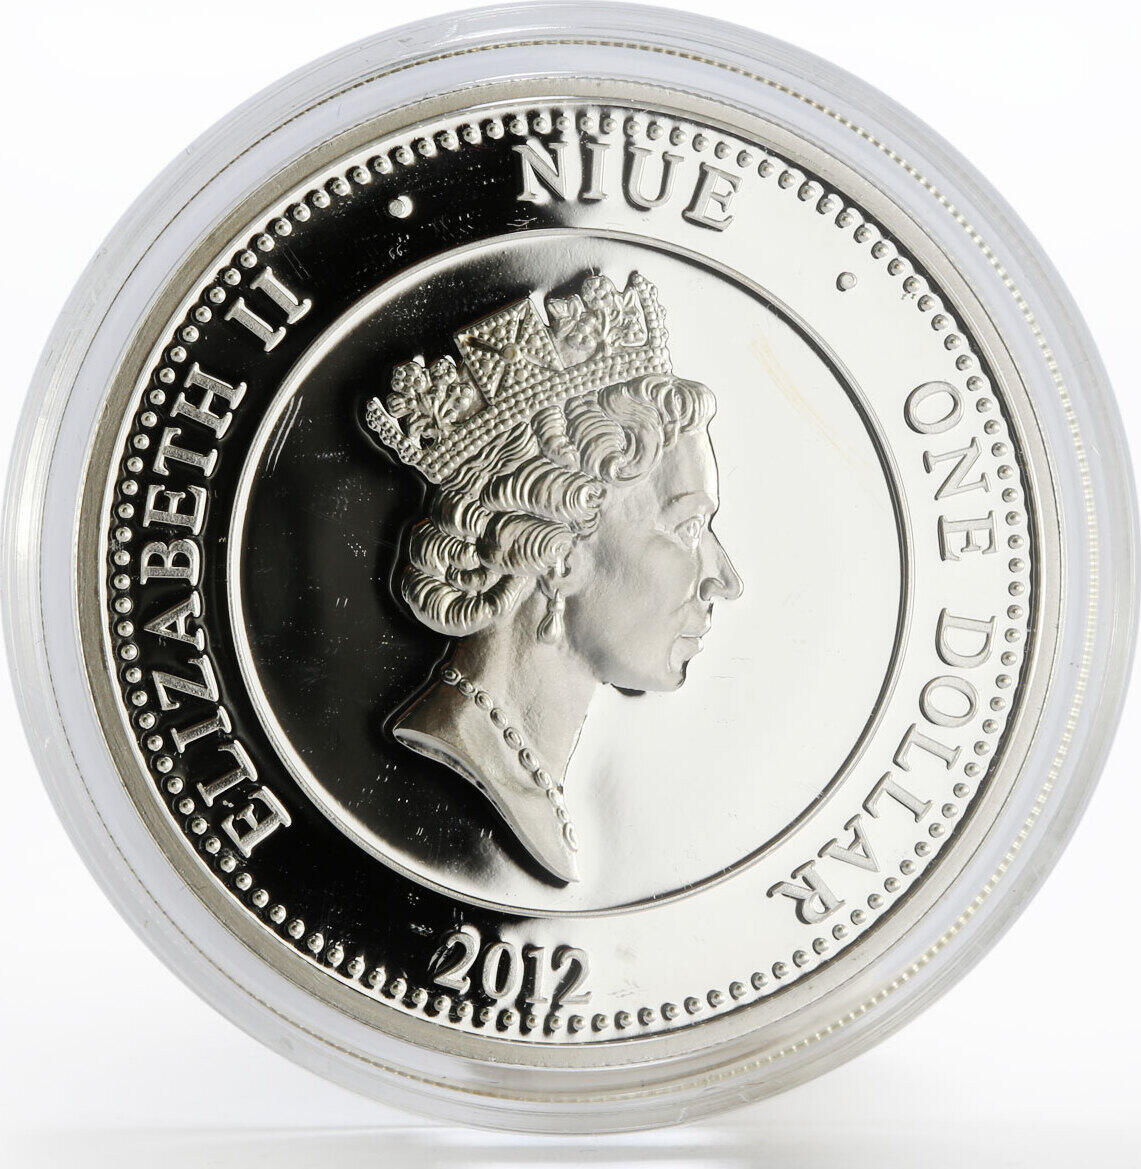 Серебряная монета доллар 2012 Niue. США 1 доллар (Dollar) серебро 2012. Монета 2012 ГМИИ. 1 серебряный доллар